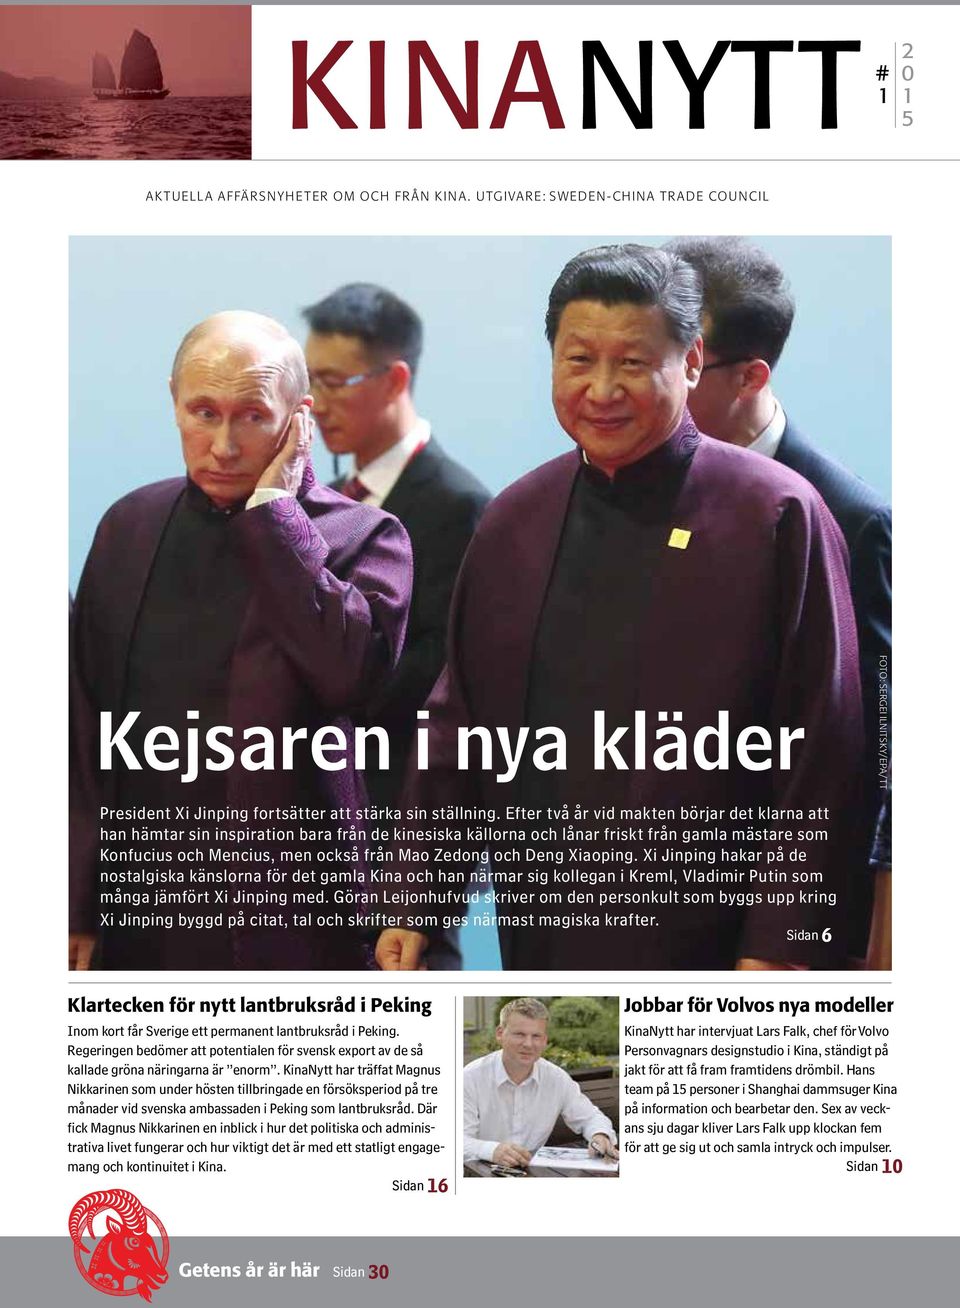 Deng Xiaoping. Xi Jinping hakar på de nostalgiska känslorna för det gamla Kina och han närmar sig kollegan i Kreml, Vladimir Putin som många jämfört Xi Jinping med.